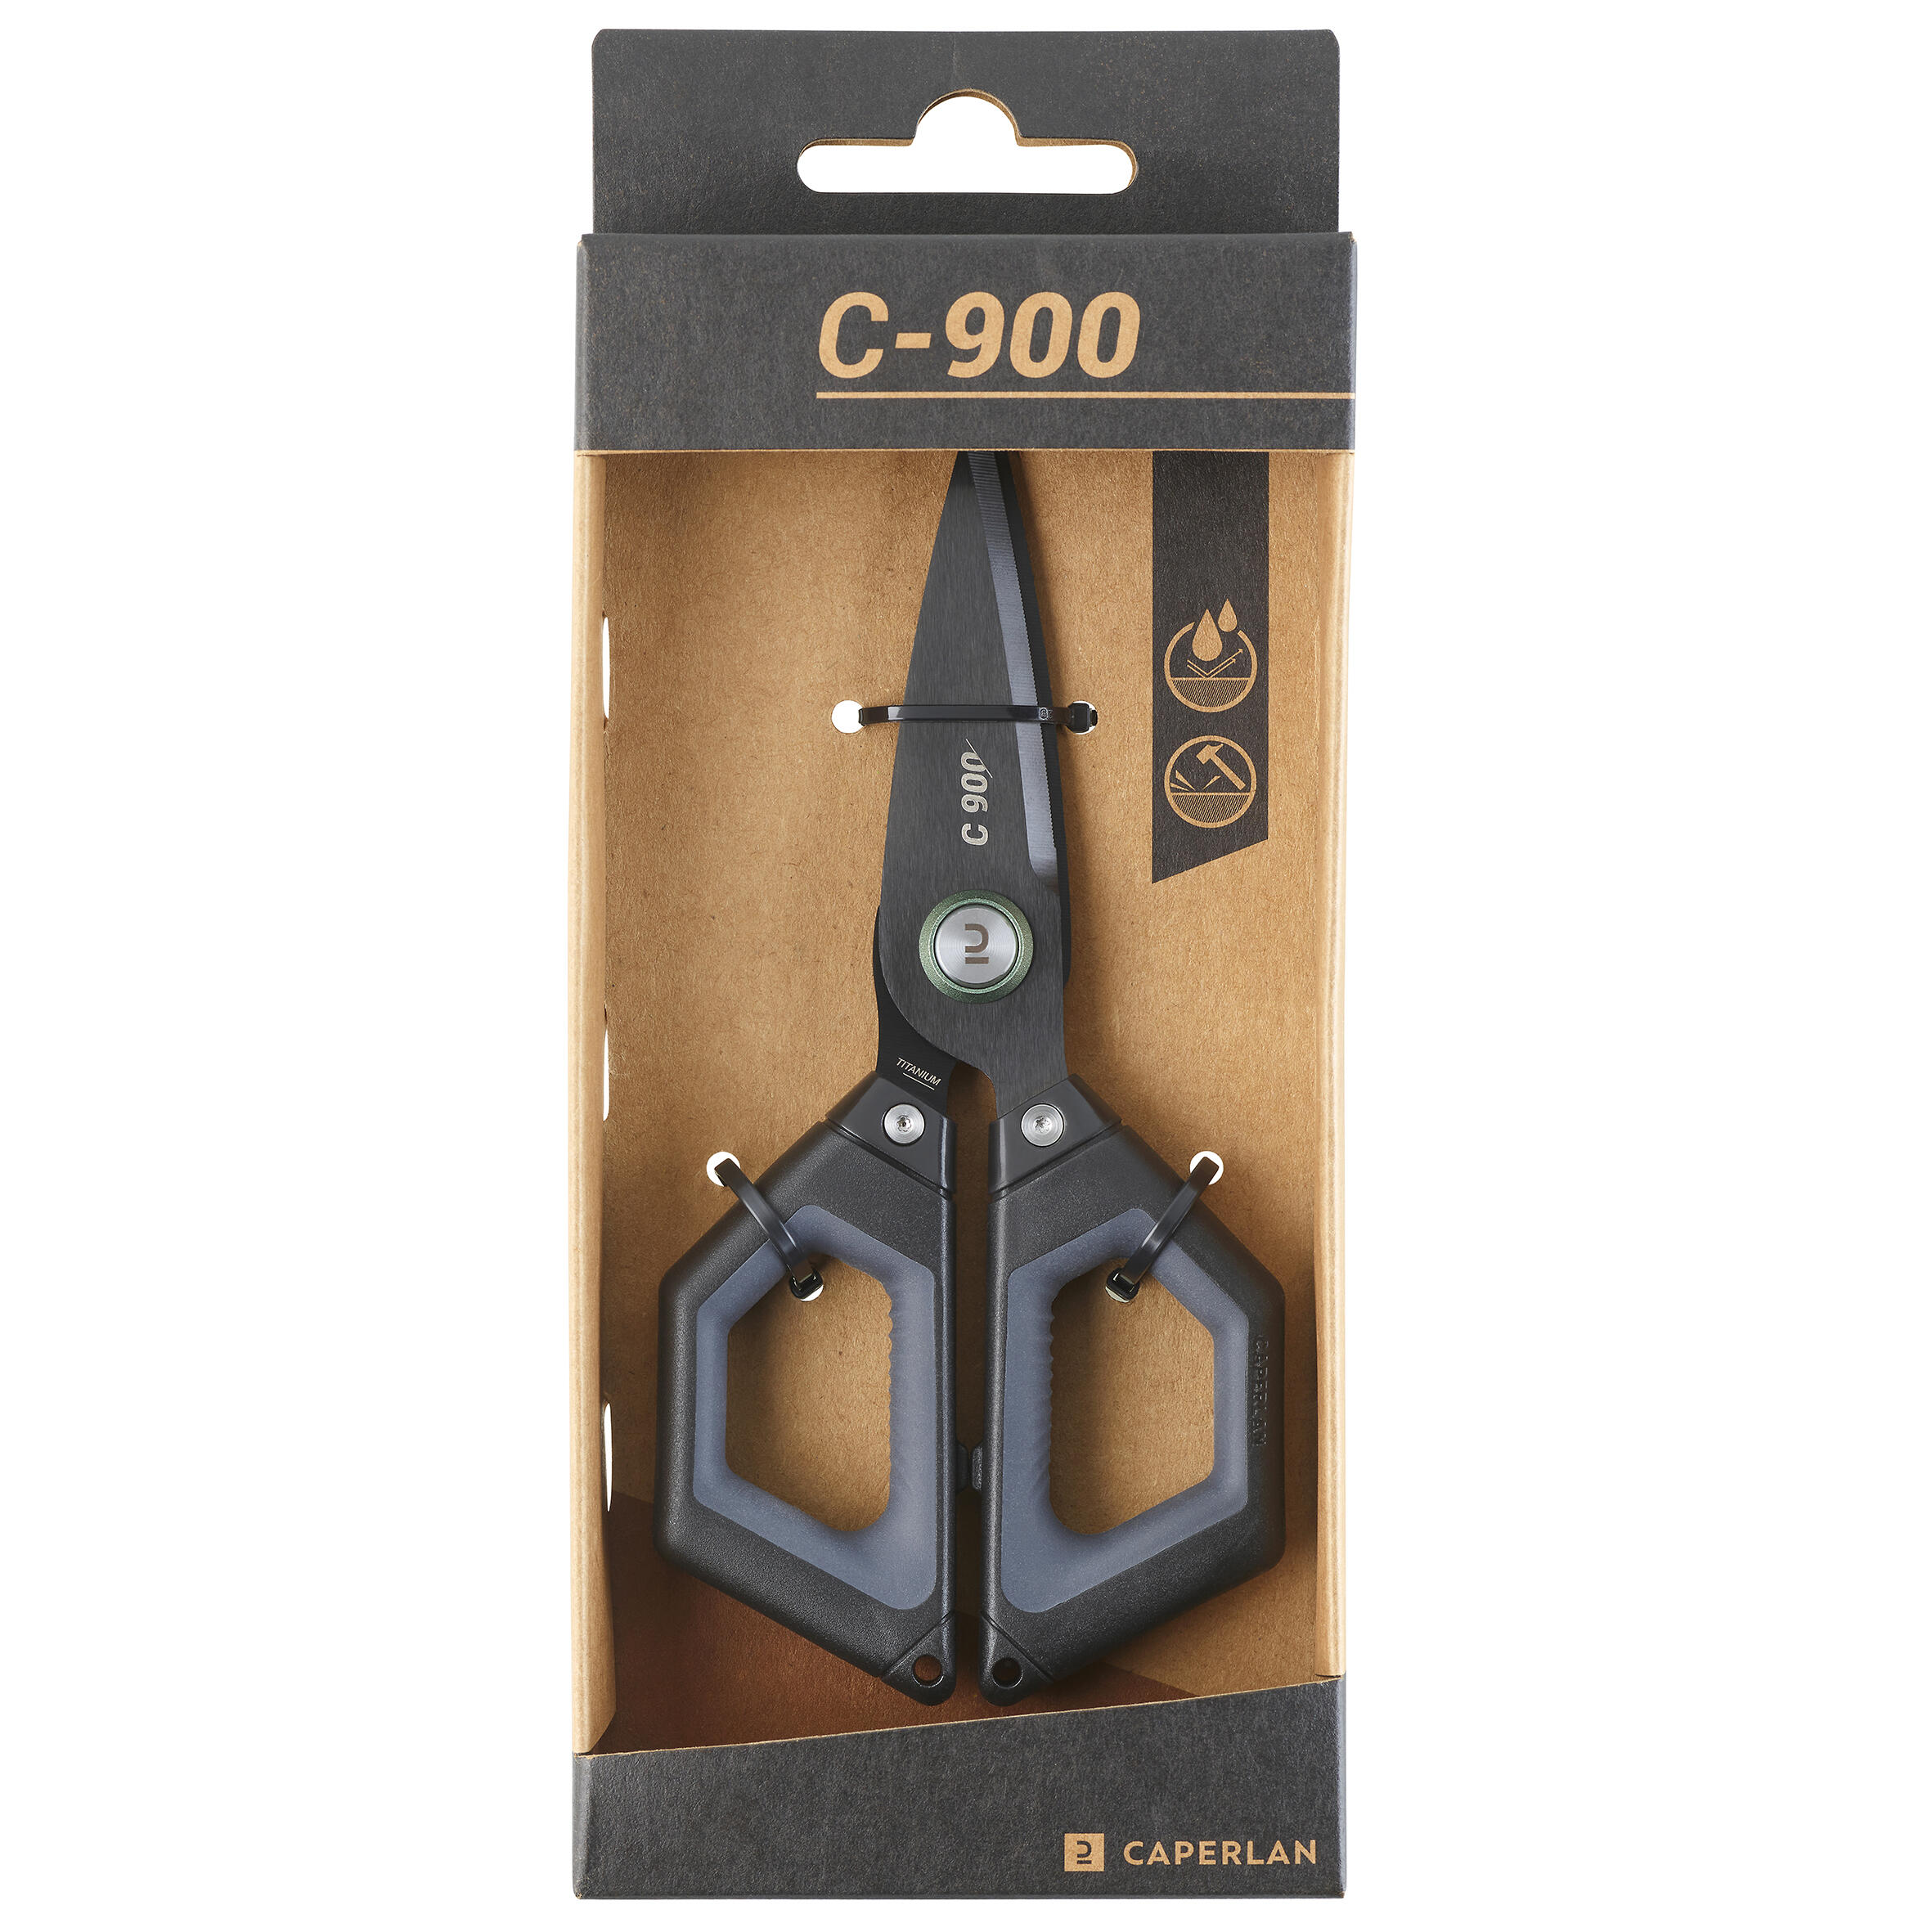 C900 fishing scissors - CAPERLAN